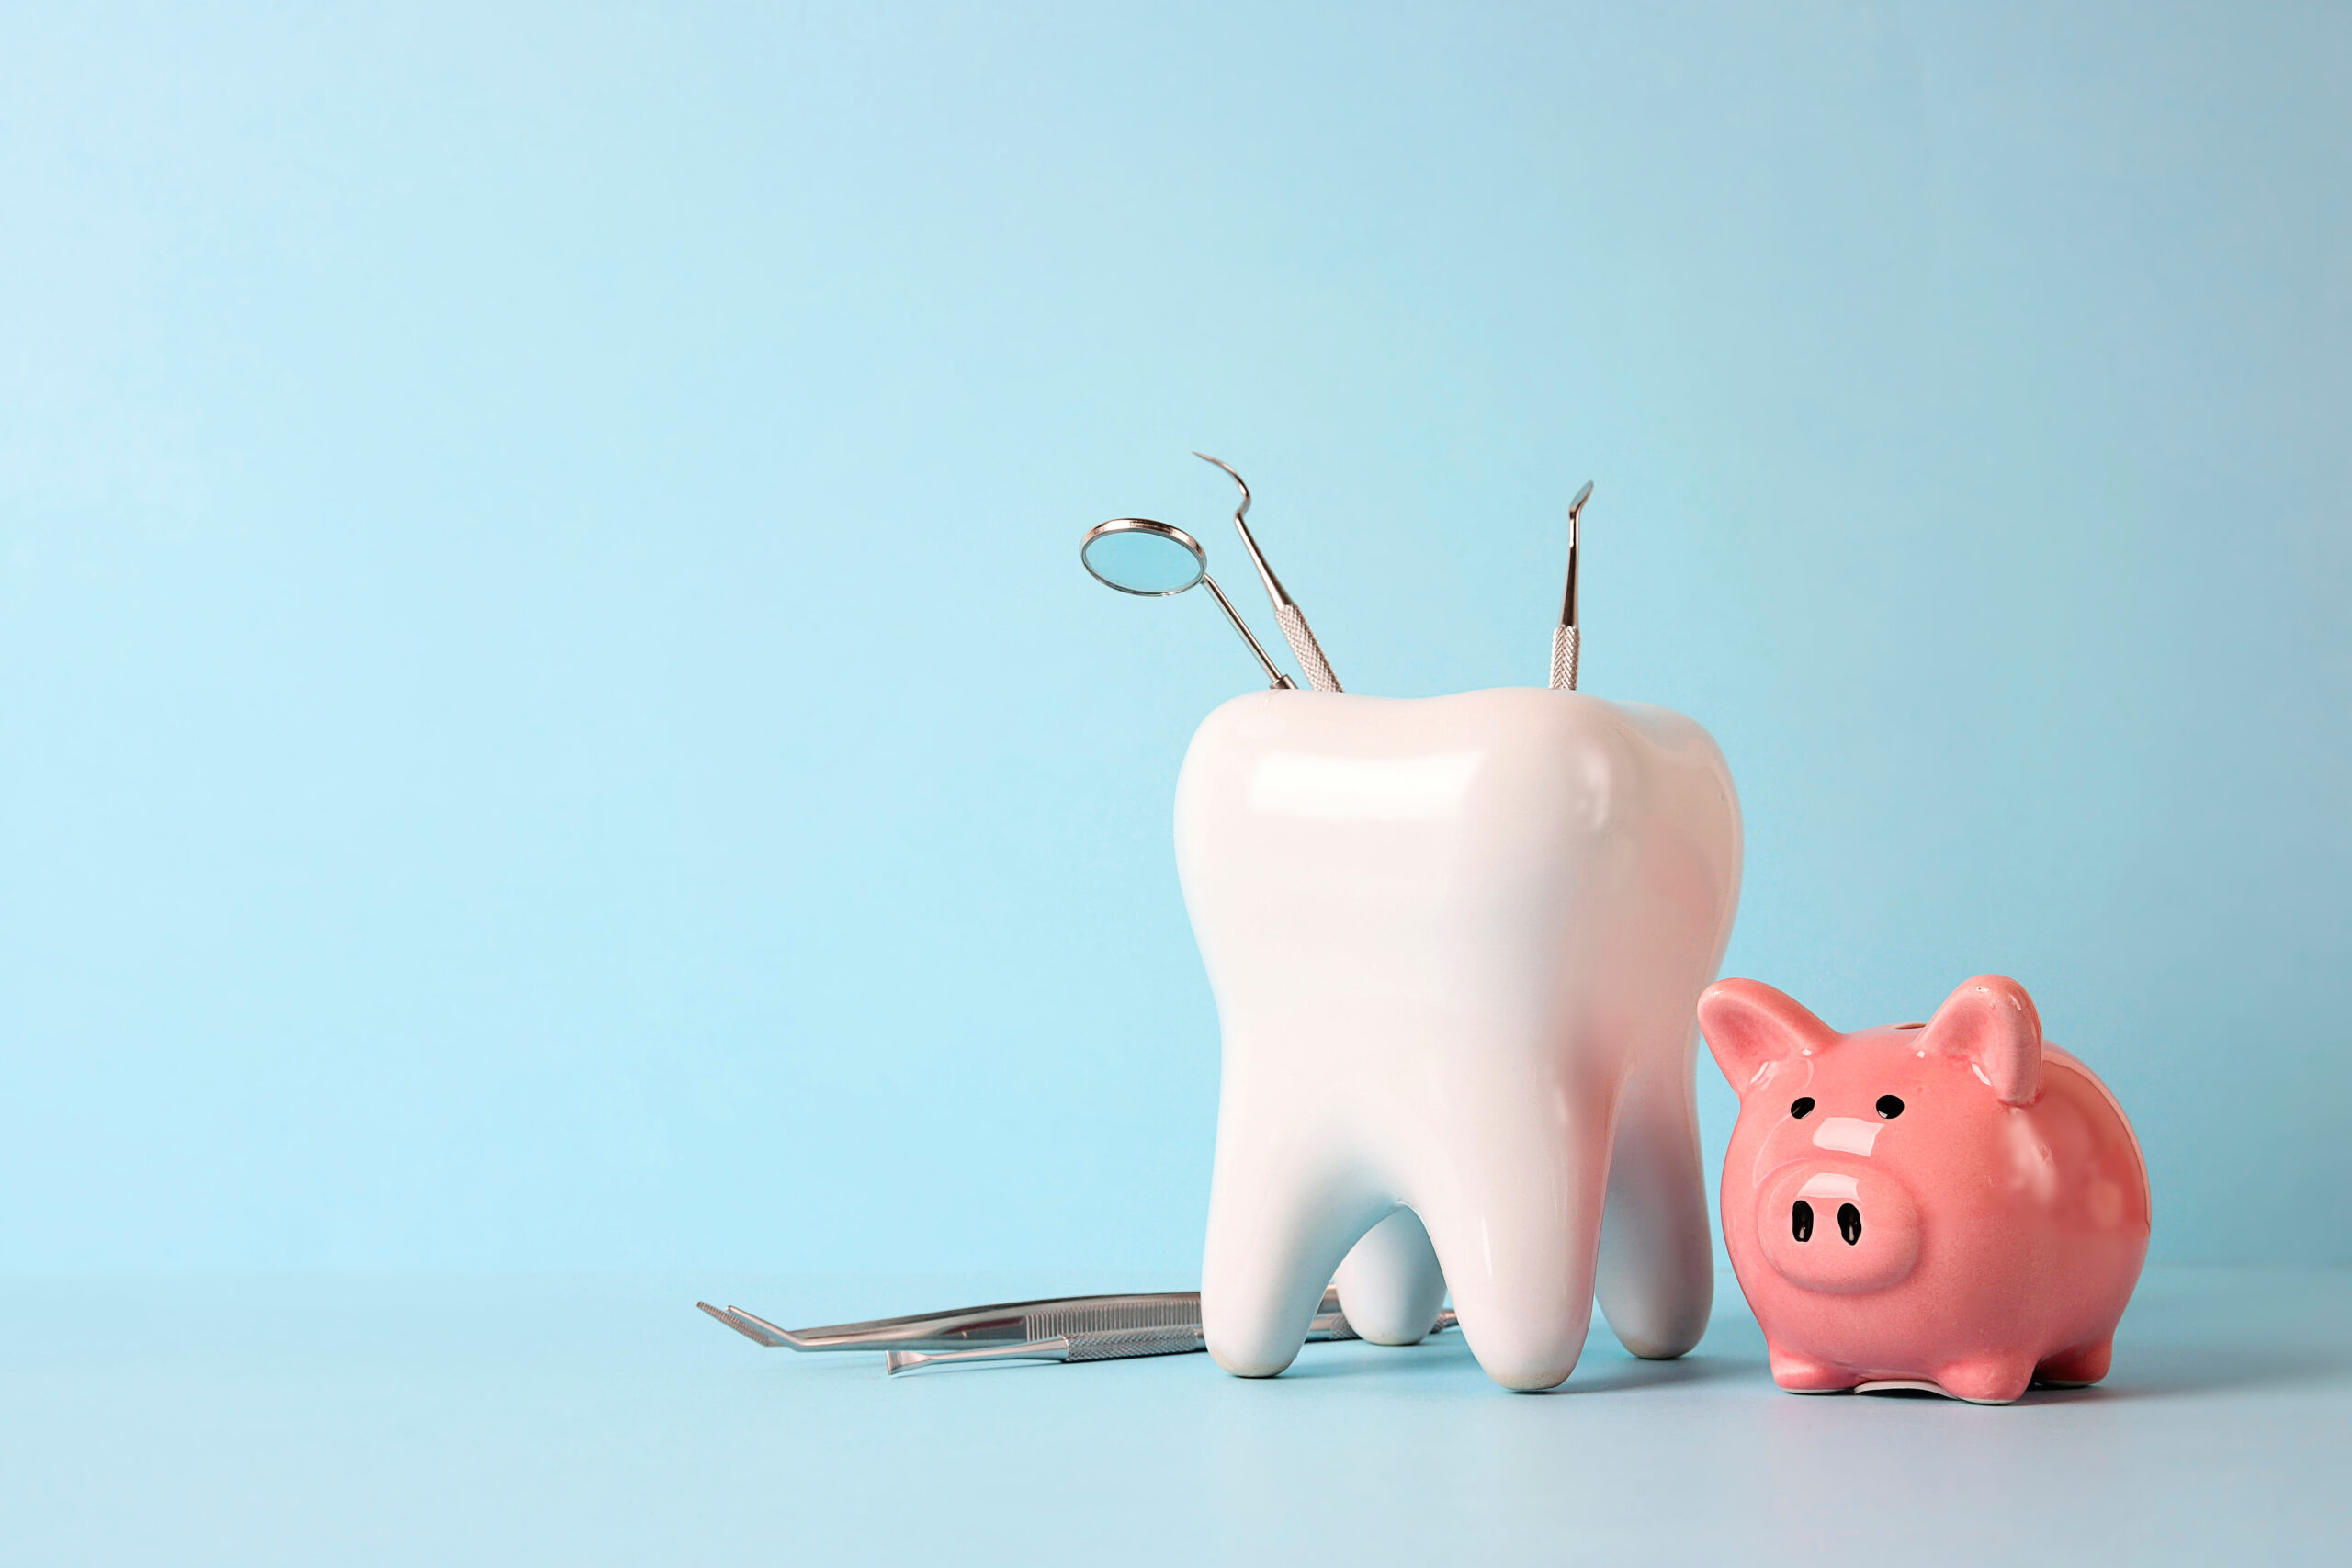 歯の模型の中に入った歯科用器具と豚の貯金箱